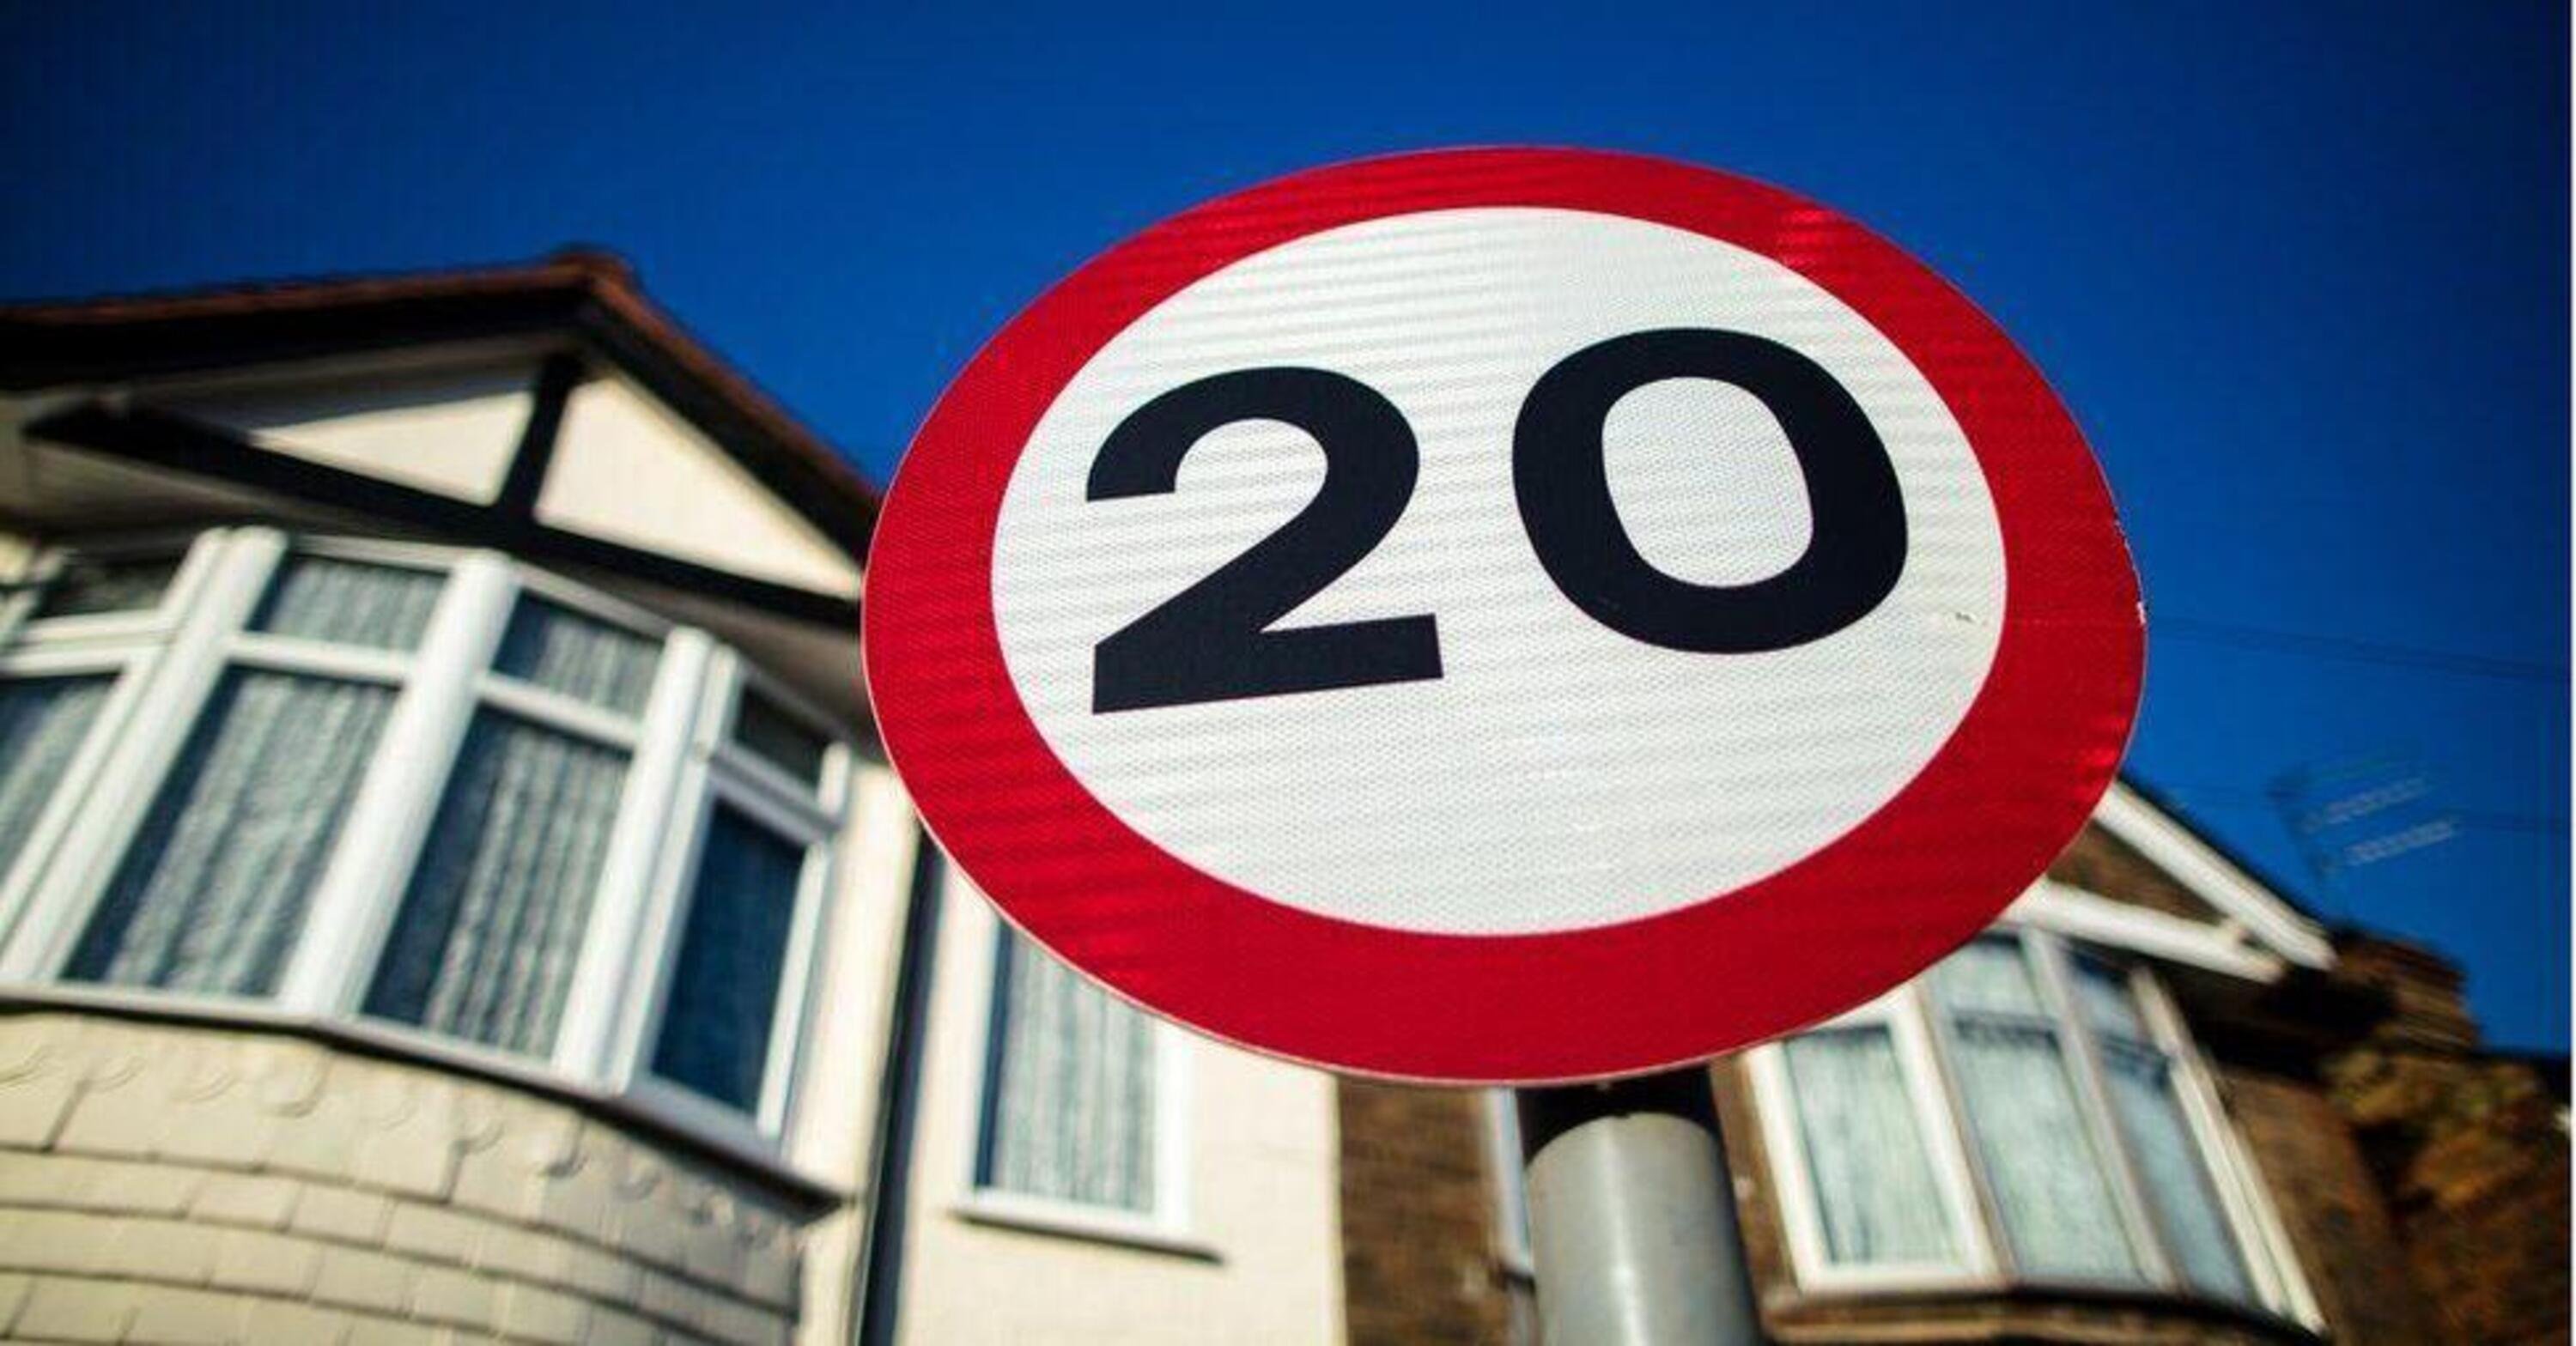 Limiti di velocit&agrave; sempre pi&ugrave; bassi: in Galles si scende a 20 (mph)